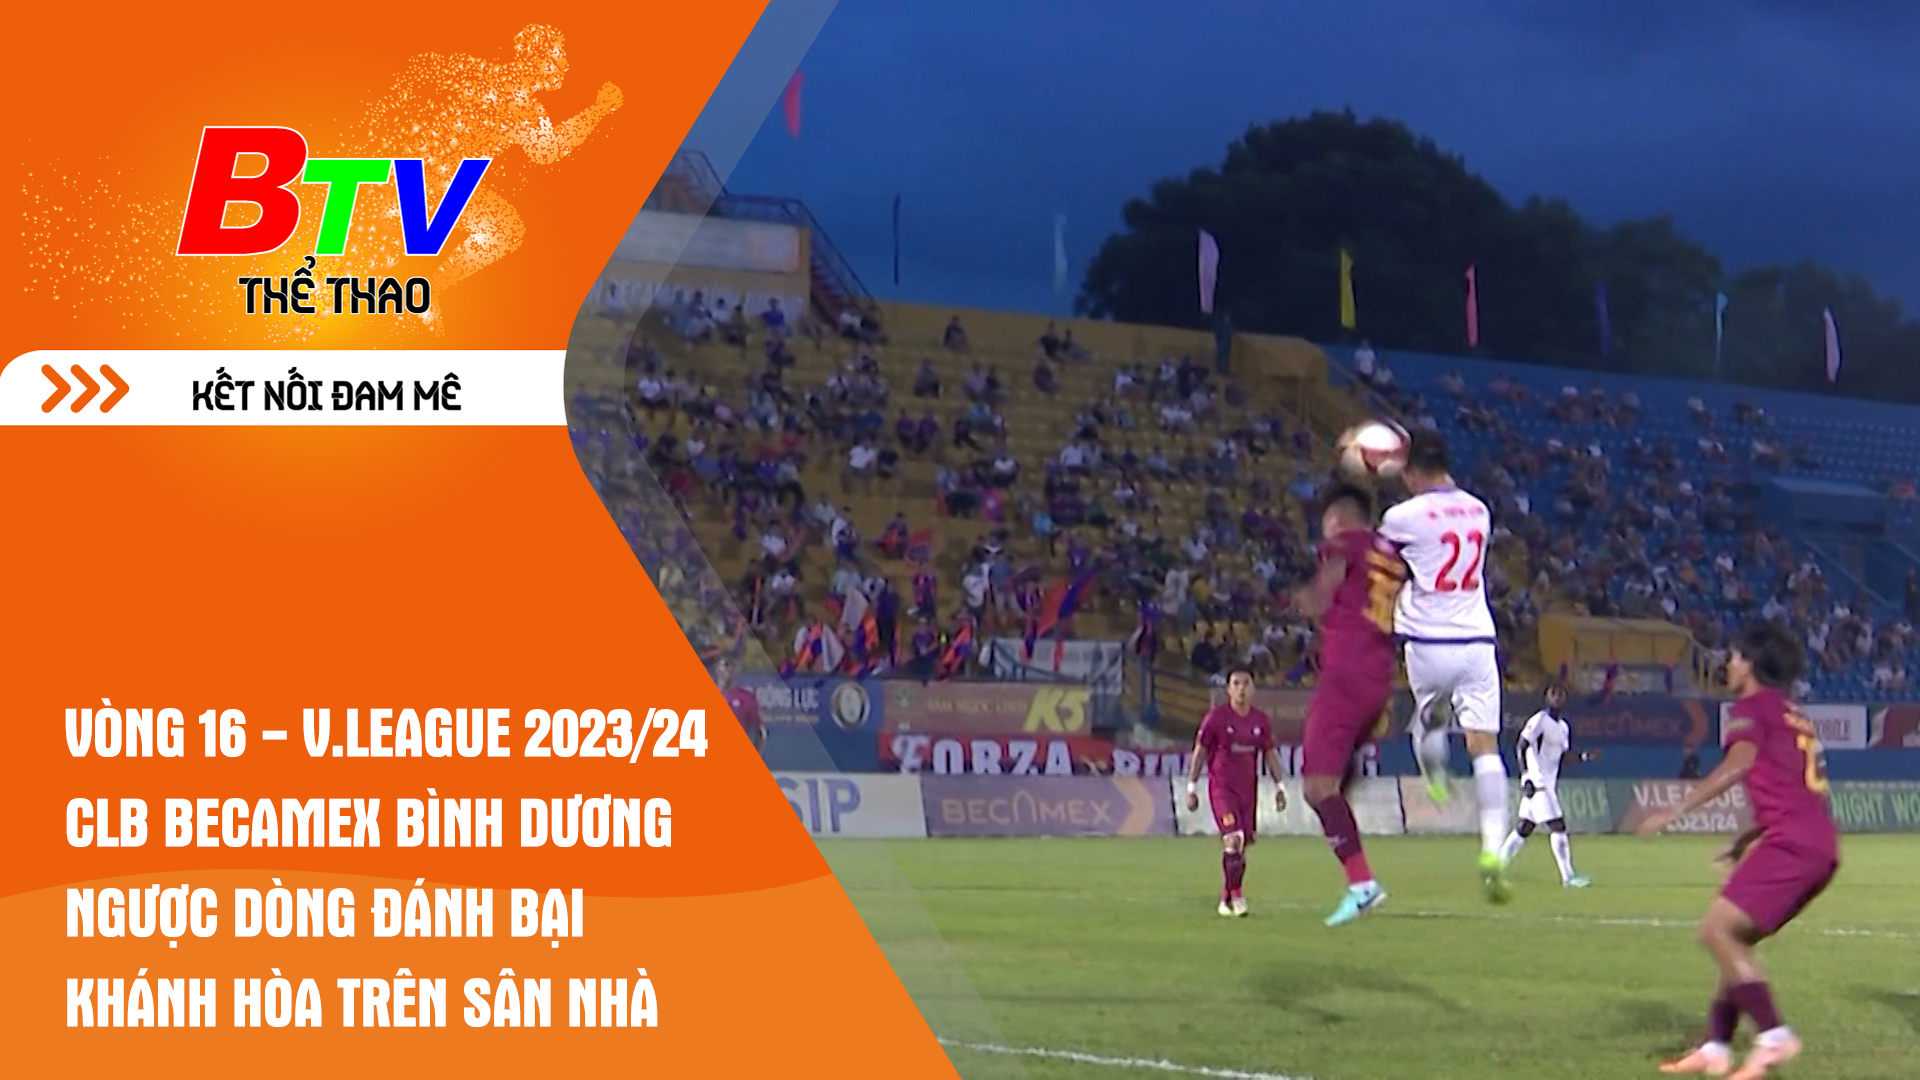 Vòng 16 - V.League 2023/24 | CLB Becamex Bình Dương ngược dòng đánh bại Khánh Hòa trên sân nhà